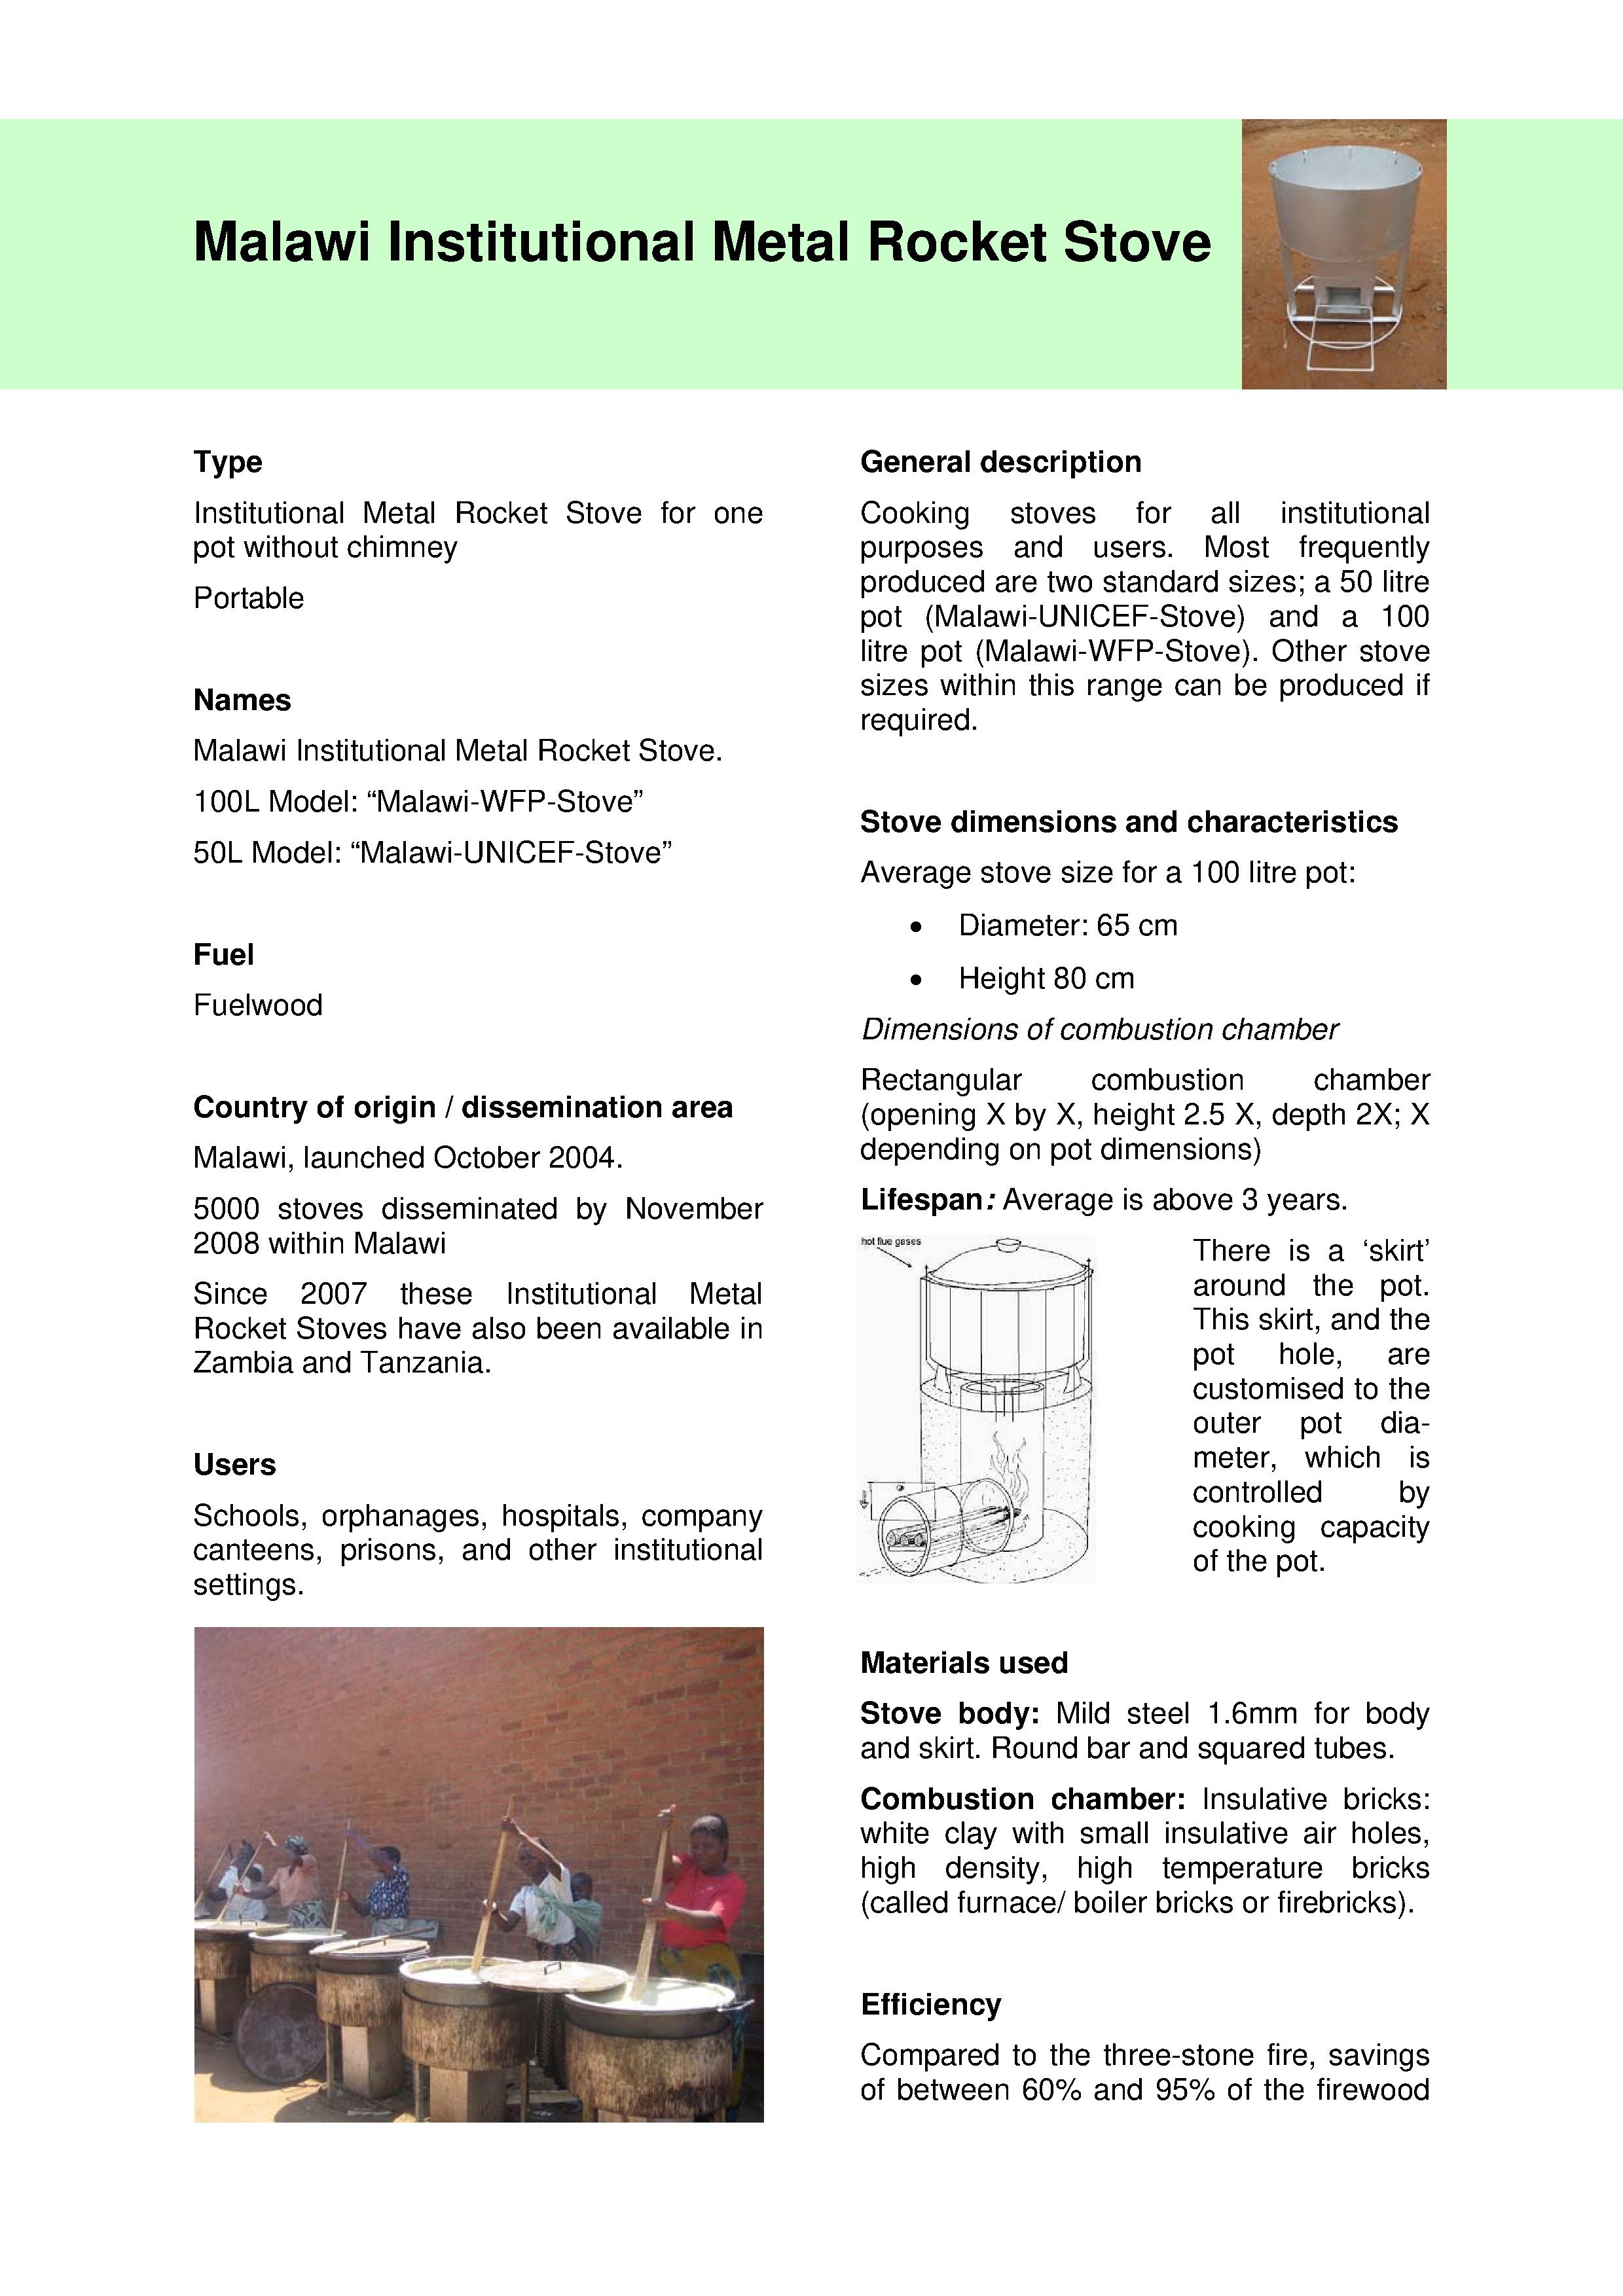 Final-inst metal rocket stove malawi-2008.pdf